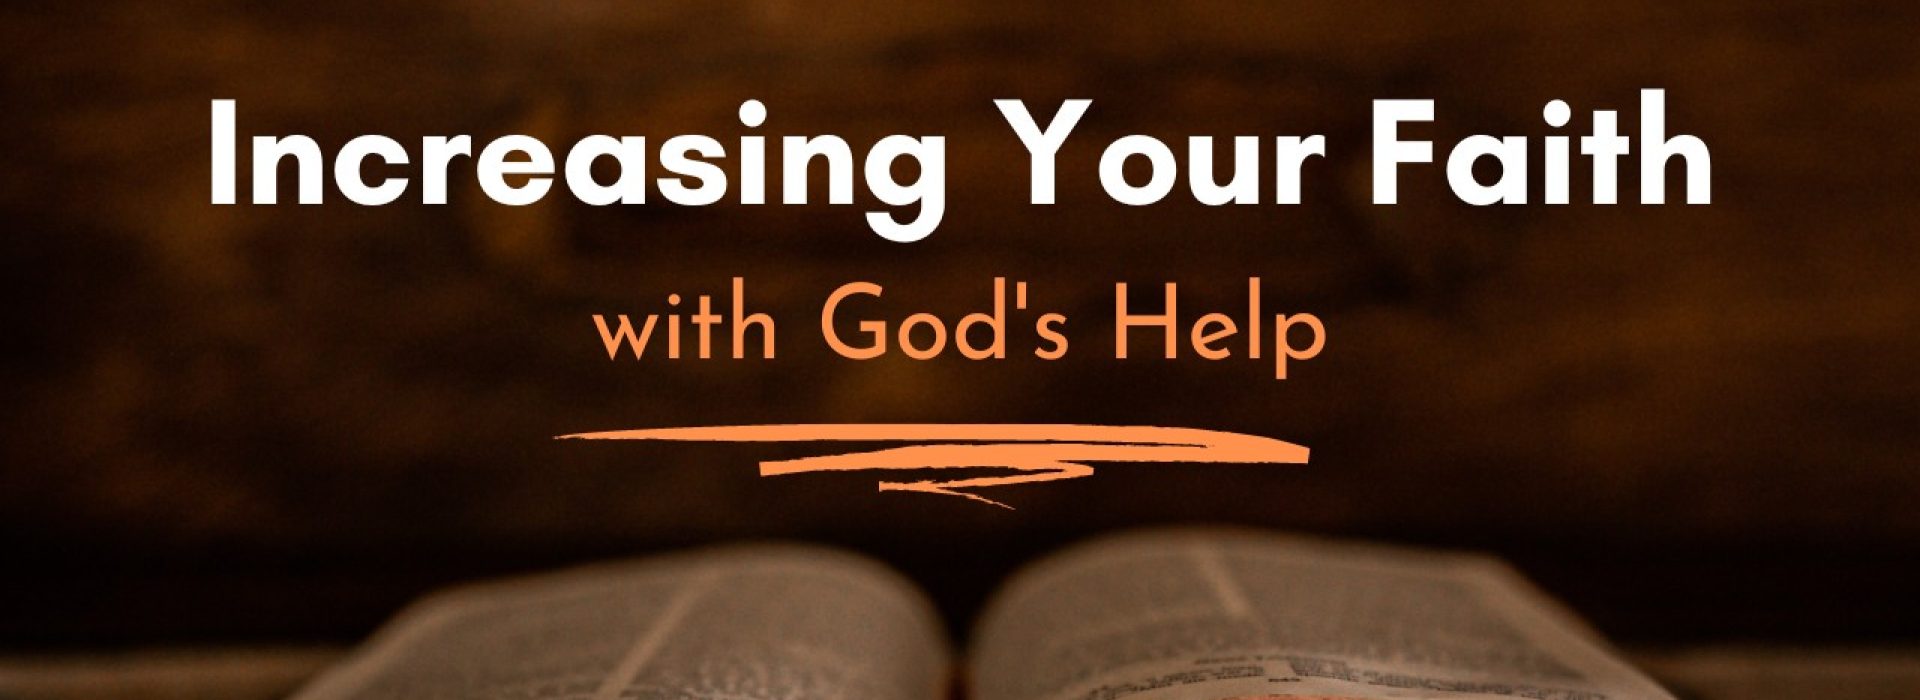 Increasing Your Faith With God's Help